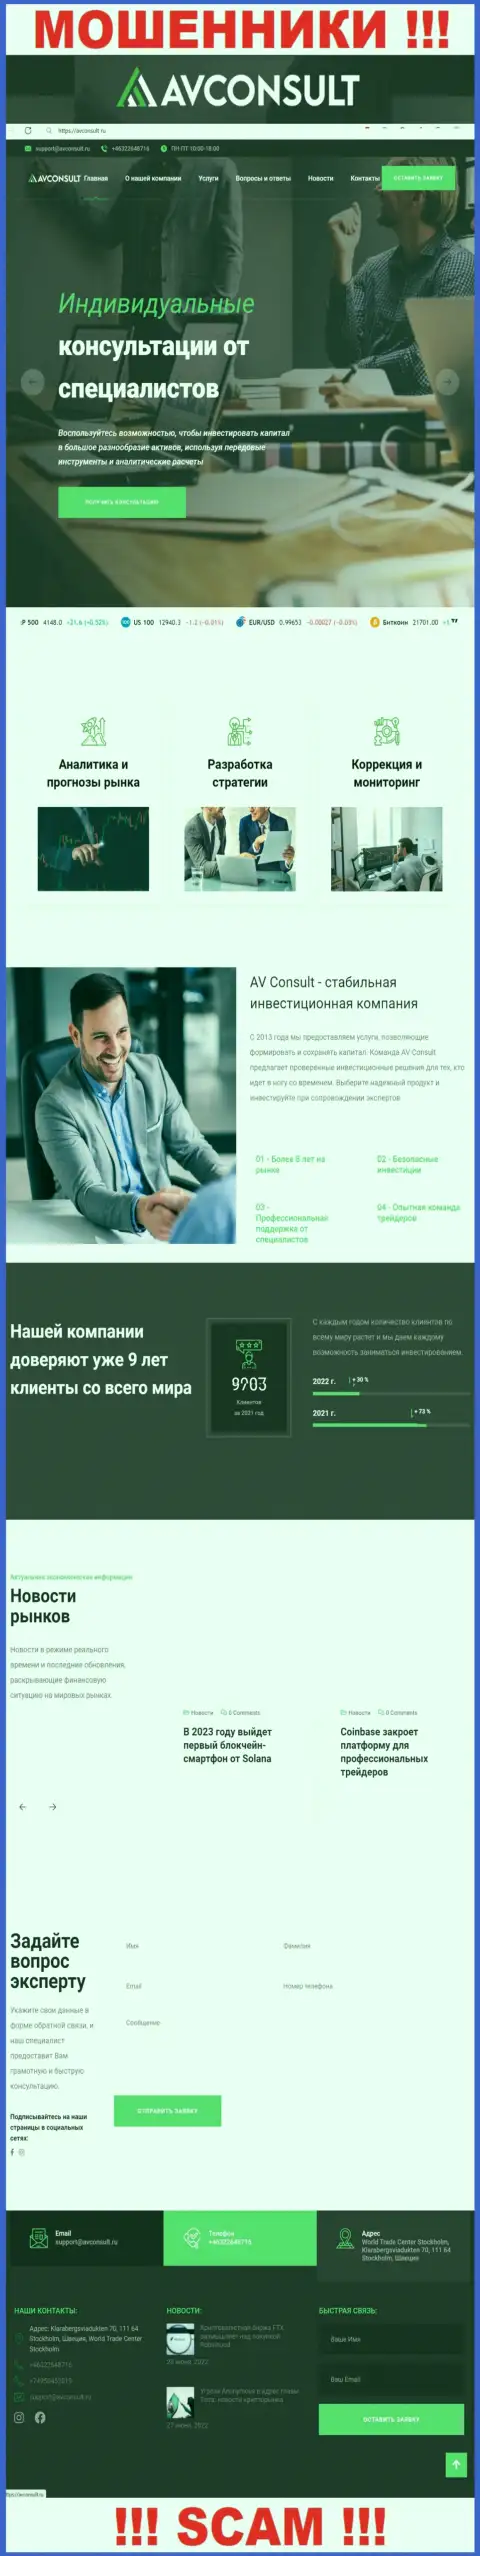 Фейковая инфа от компании AVConsult Ru на официальном сайте мошенников